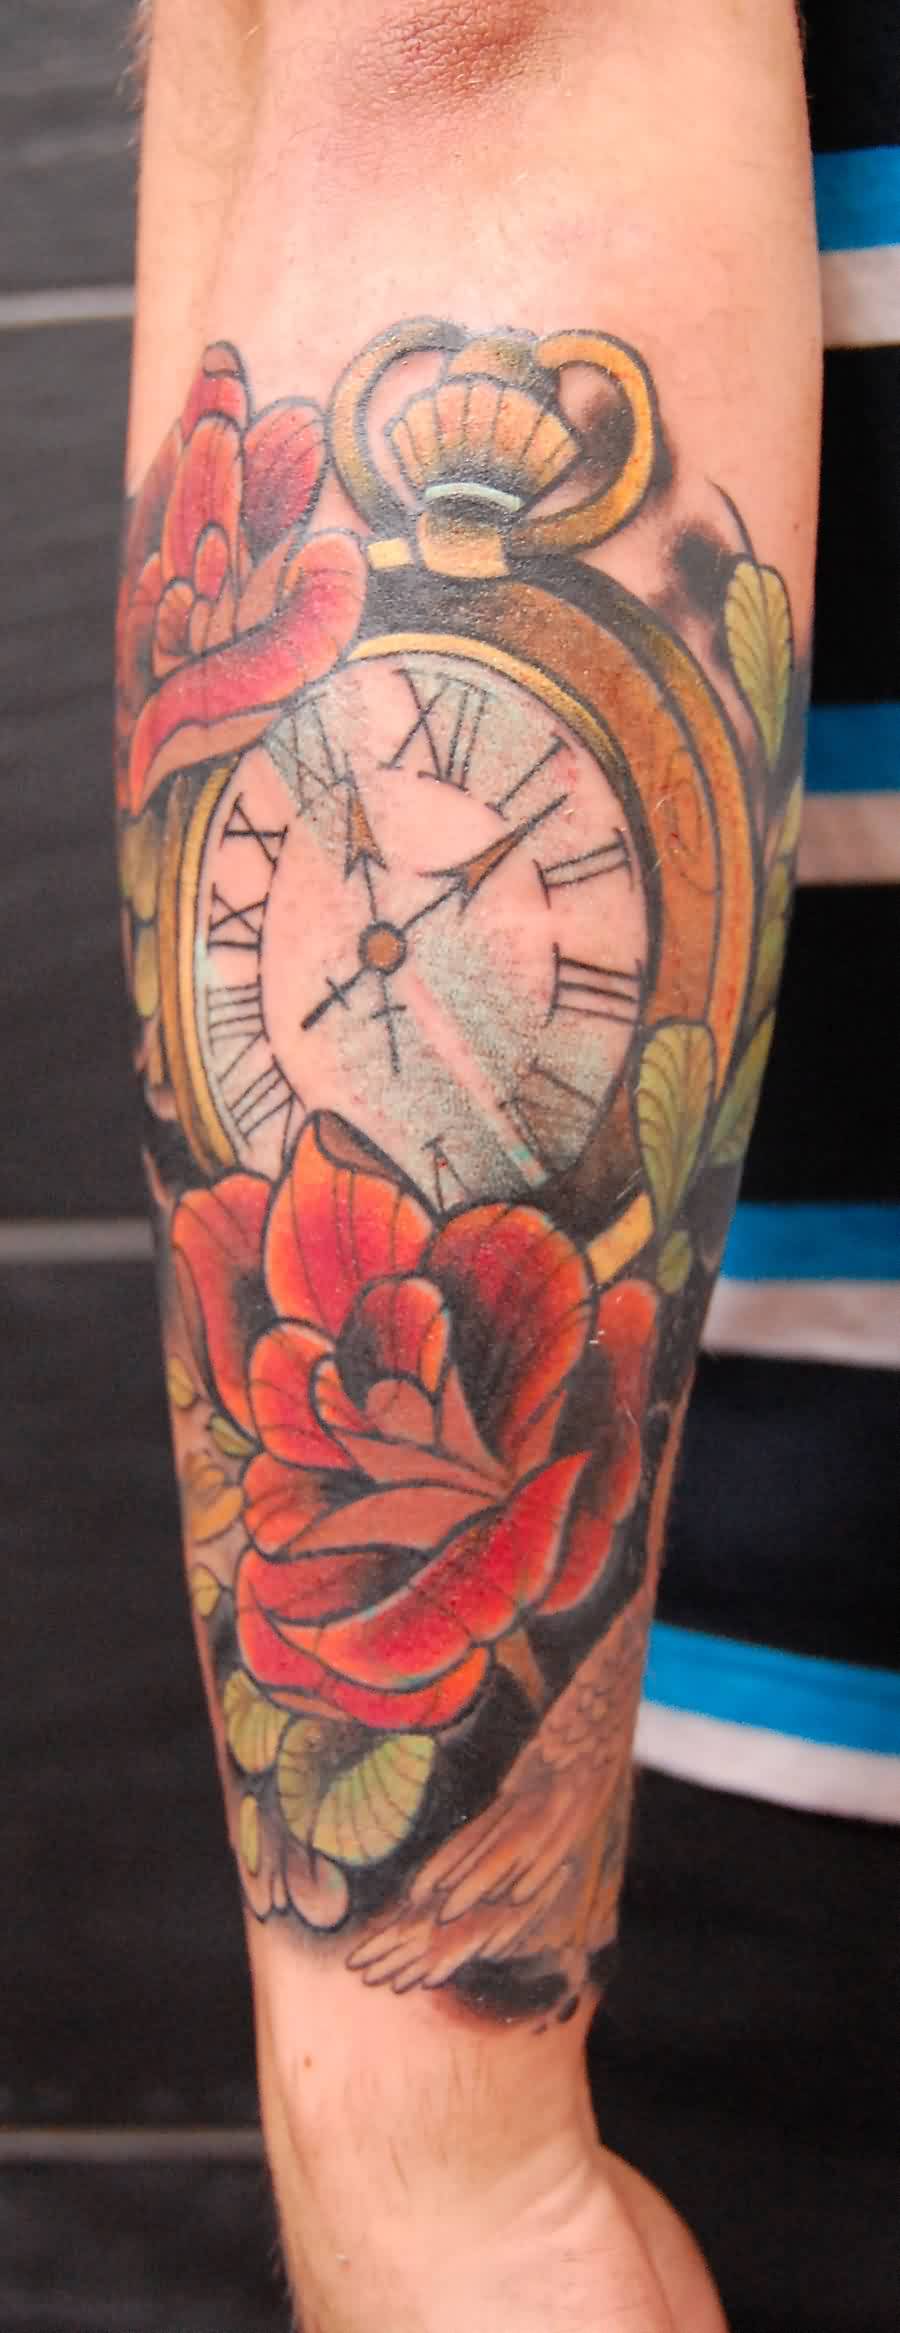 47 Excellent Clock Tattoos For Hand - Tattoo Designs – TattoosBag.com